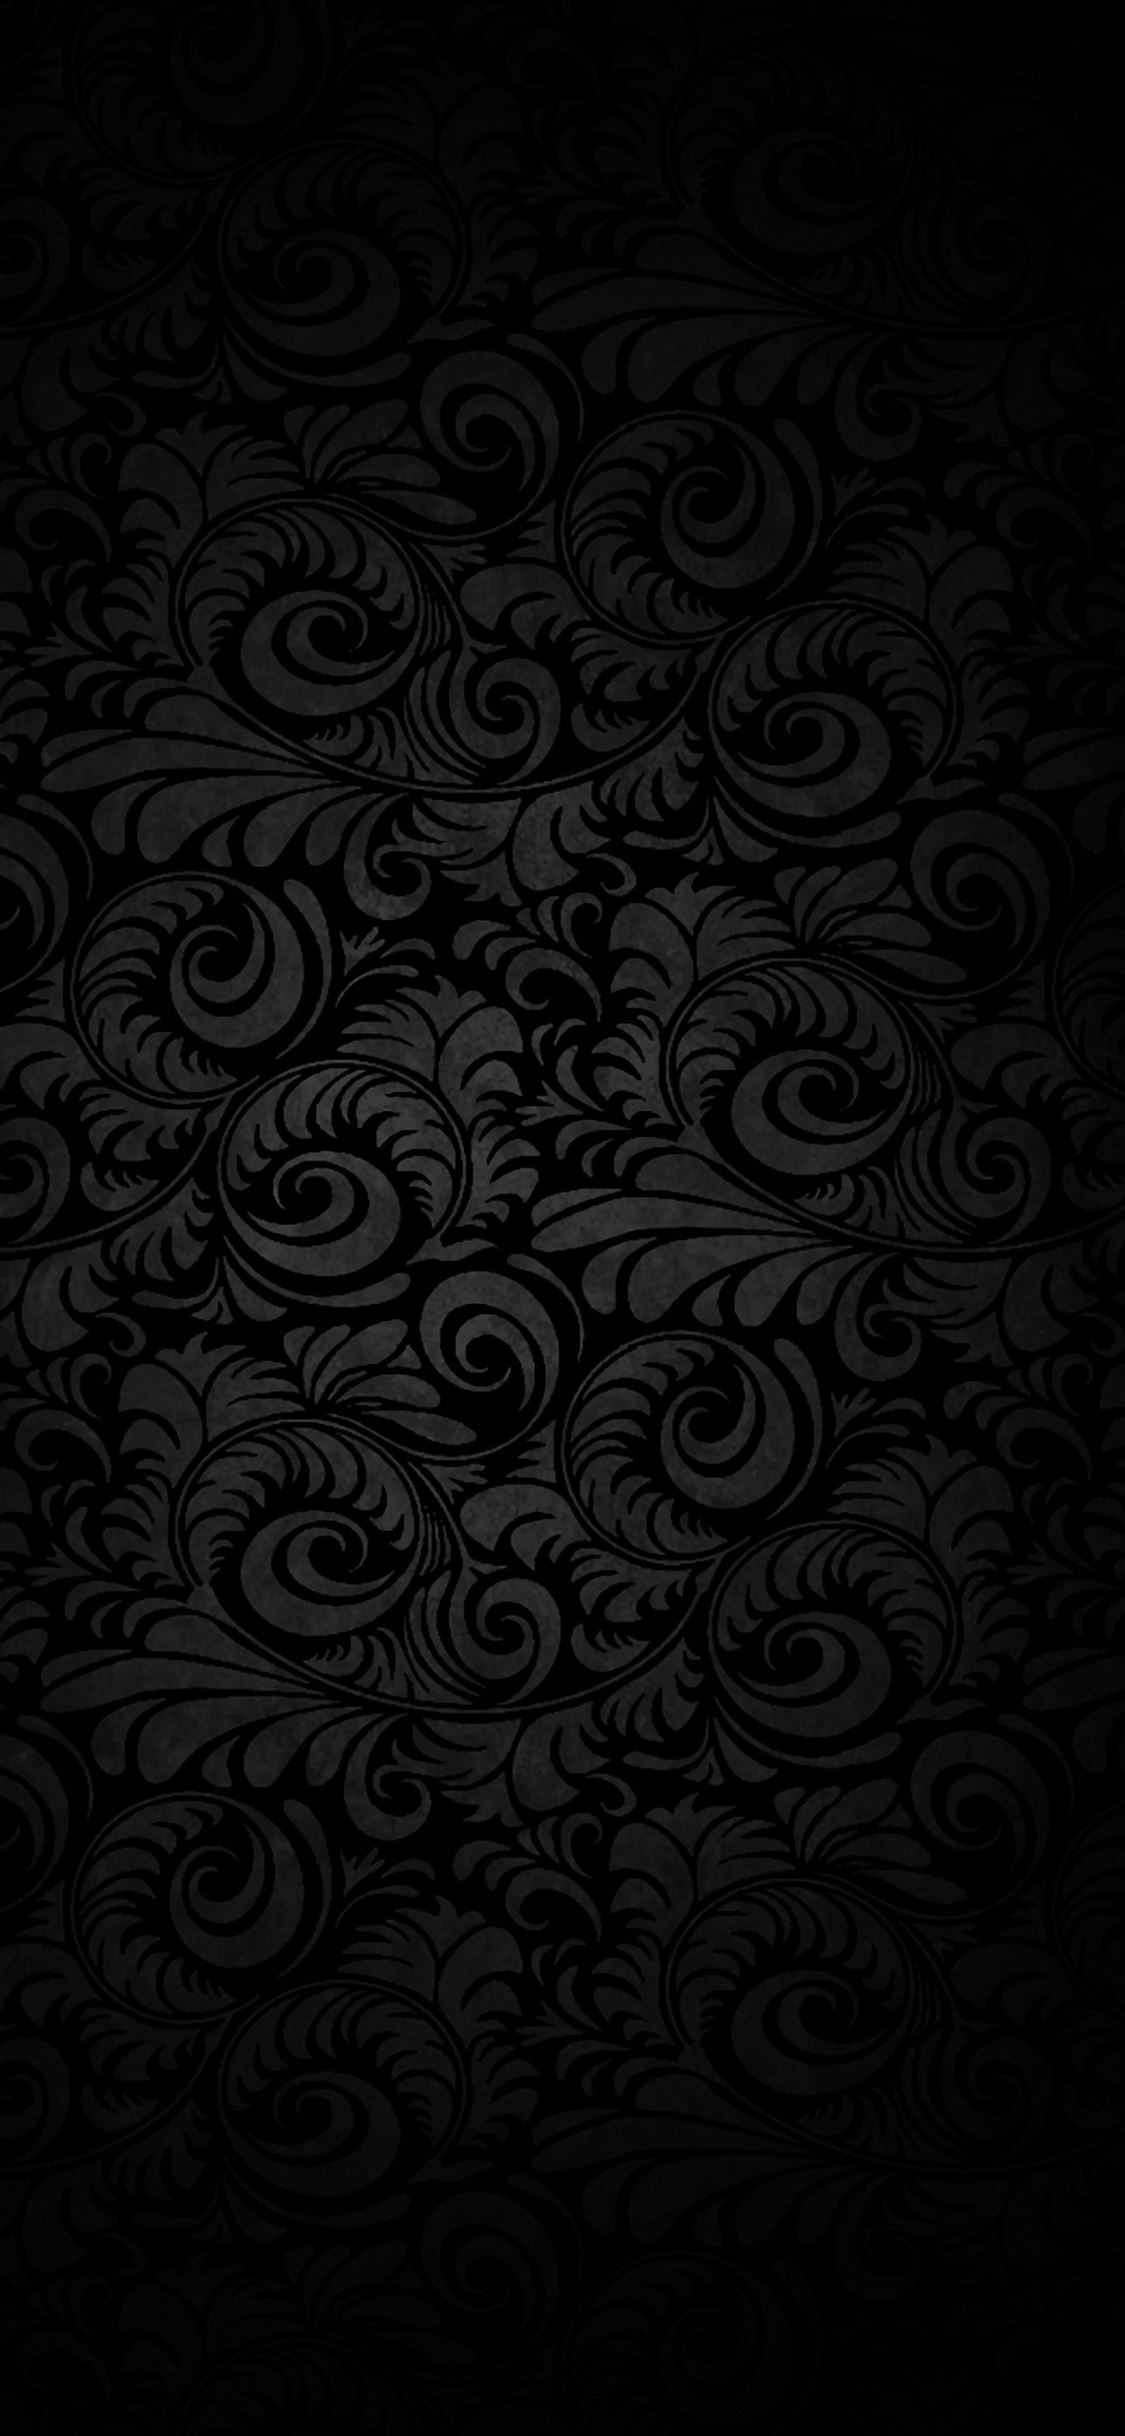 Dark patterned background iPhone Wallpapers Free Download - Hình nền iPhone đen với hoa văn: Bộ sưu tập hình nền iPhone đen với những hoa văn độc đáo không chỉ làm tôn lên đẳng cấp của chiếc điện thoại mà còn thể hiện phong cách thời trang của bạn. Hãy cùng tìm hiểu và lựa chọn cho mình những hình nền độc nhất vô nhị.